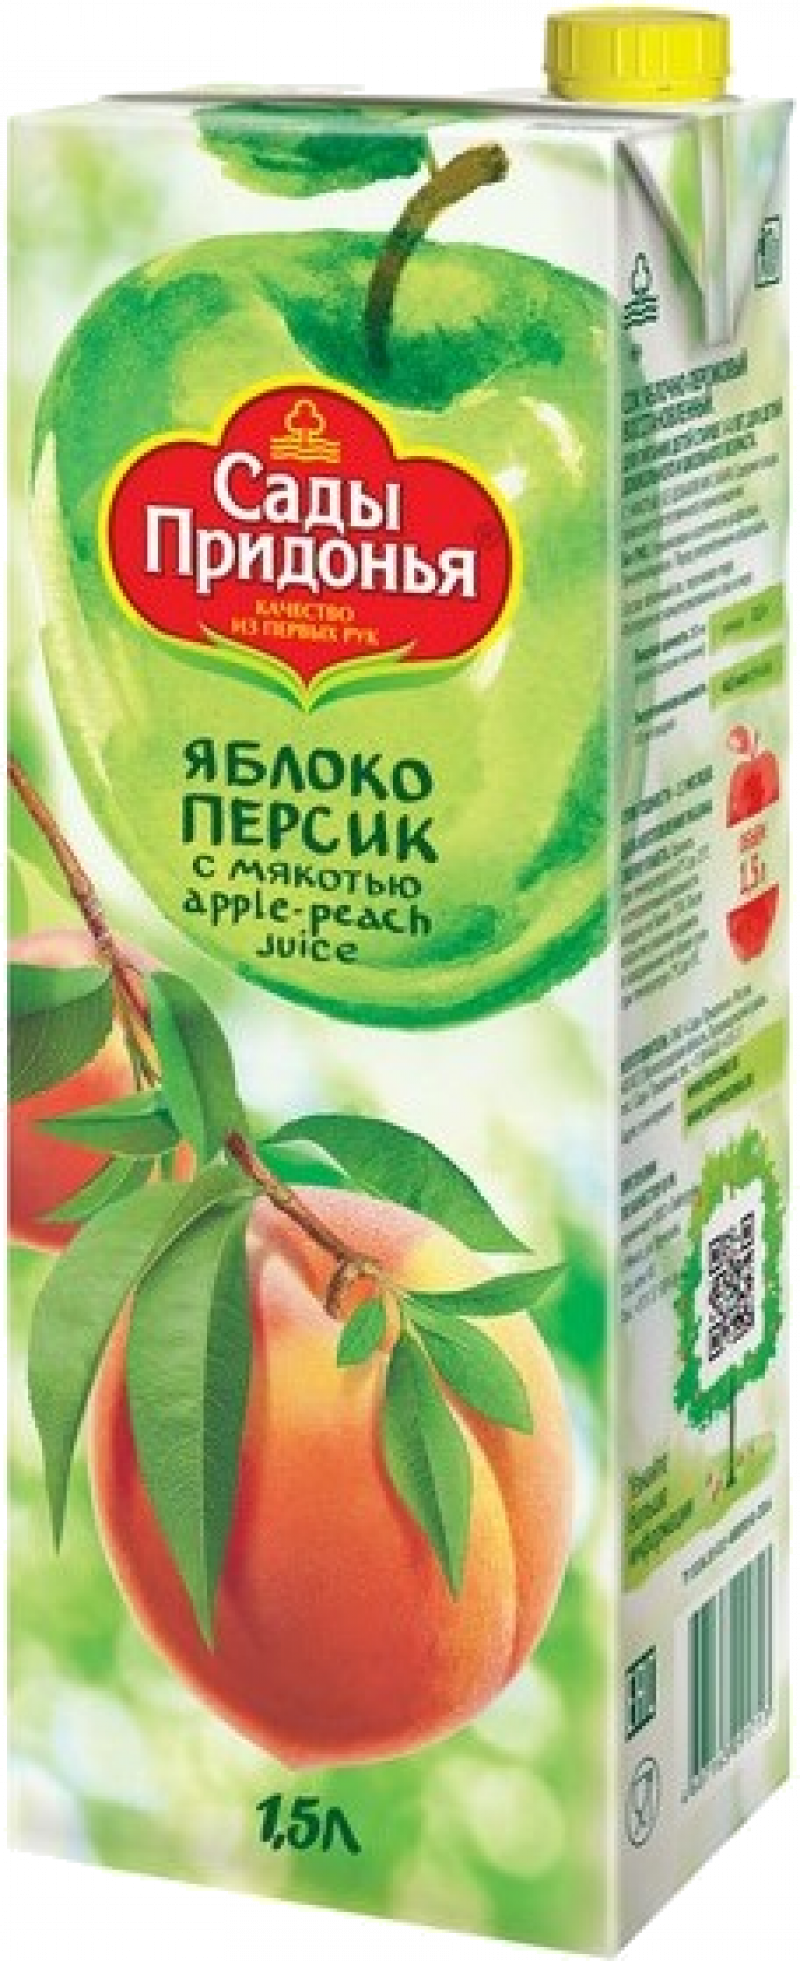 Сок 1,5л Сады Придонья сок яблочно-персиковый